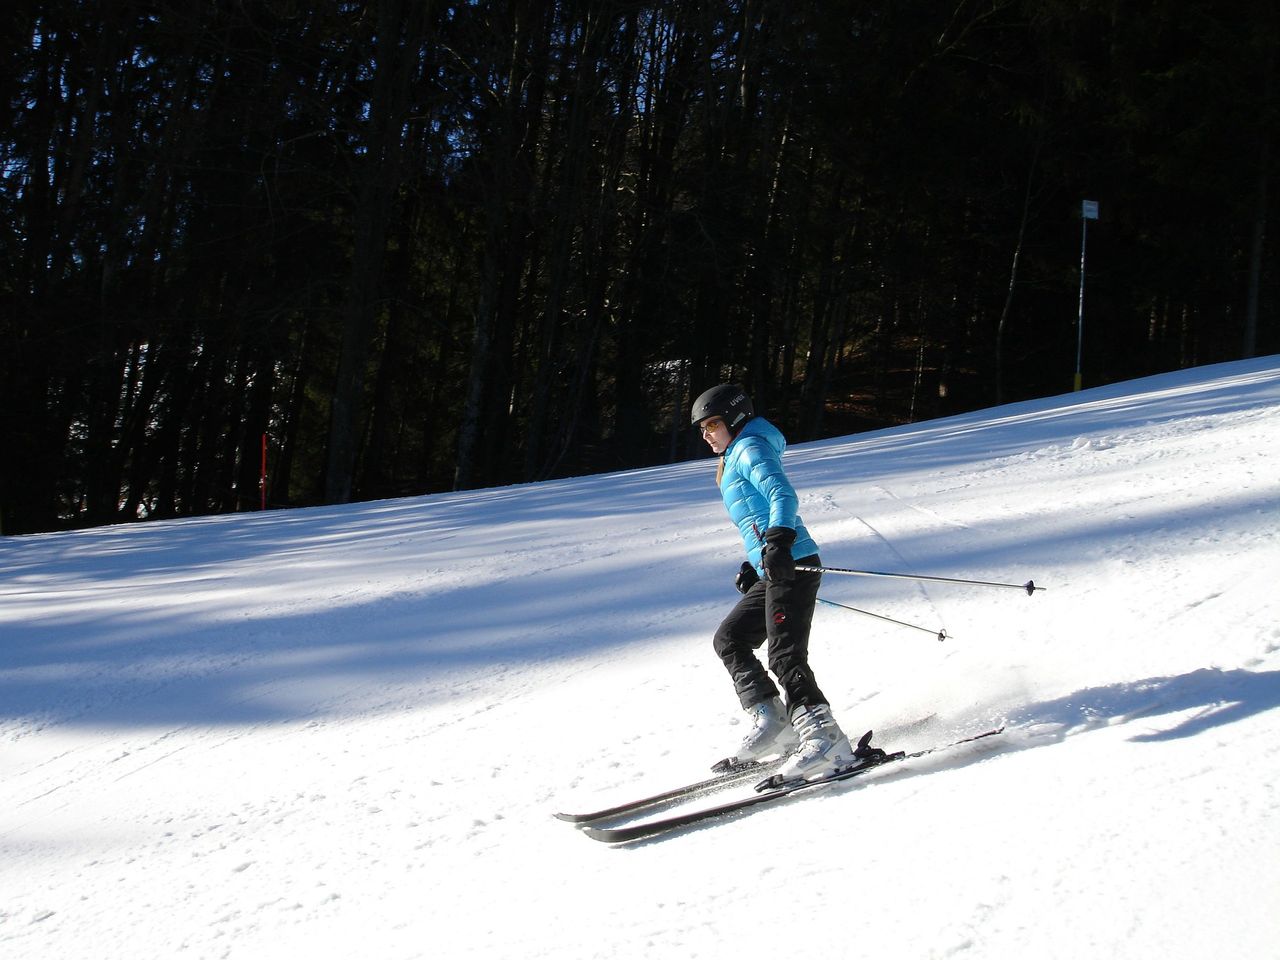 kobieta narty stok narciarski zima sport zimowy